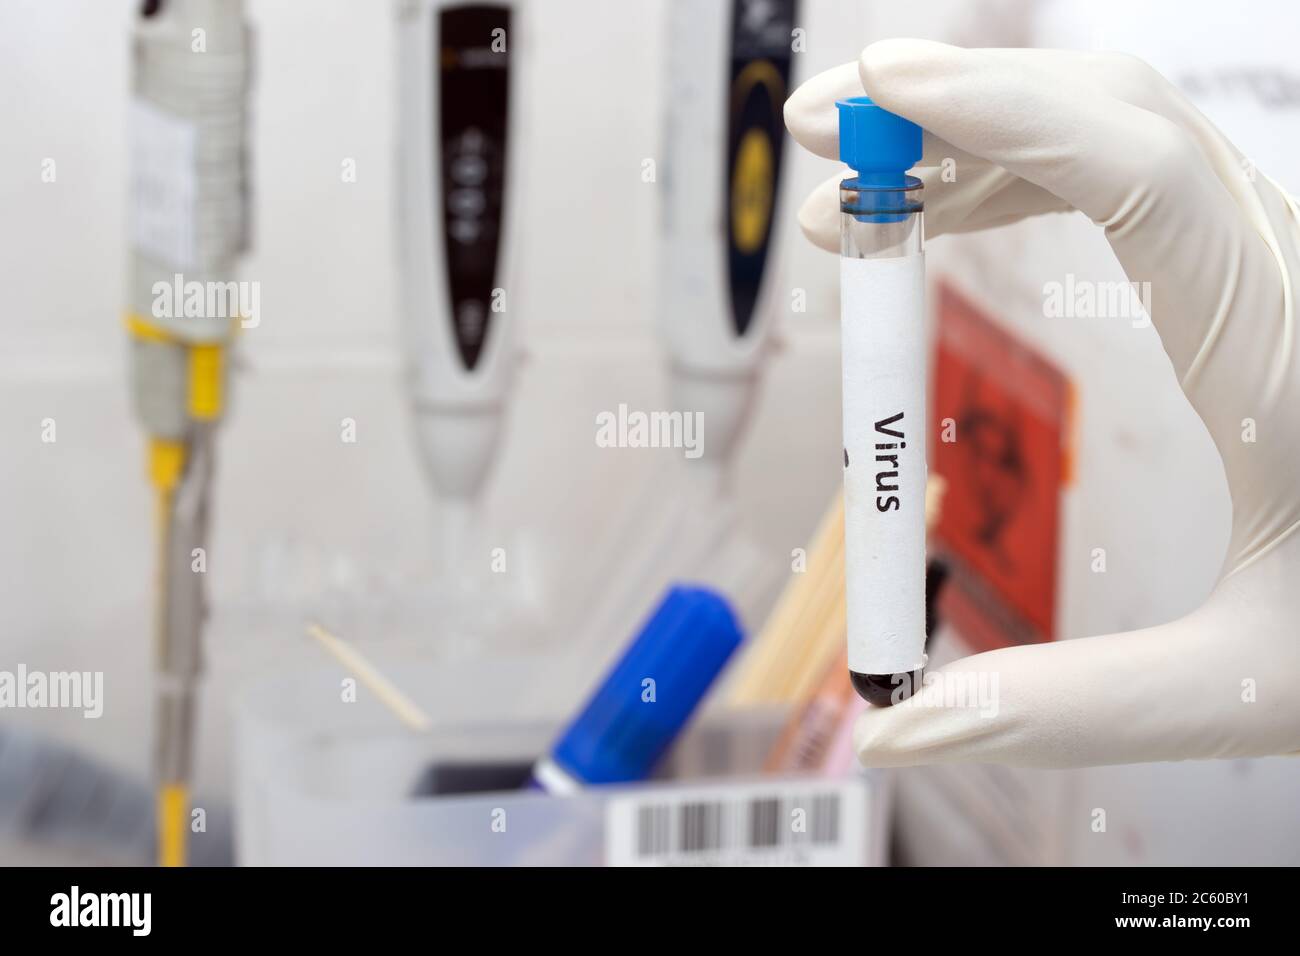 Recherche de virus en laboratoire. Main dans le gant tenant un tube à essai avec l'inscription virus dans un laboratoire. Échantillon de sang. Banque D'Images